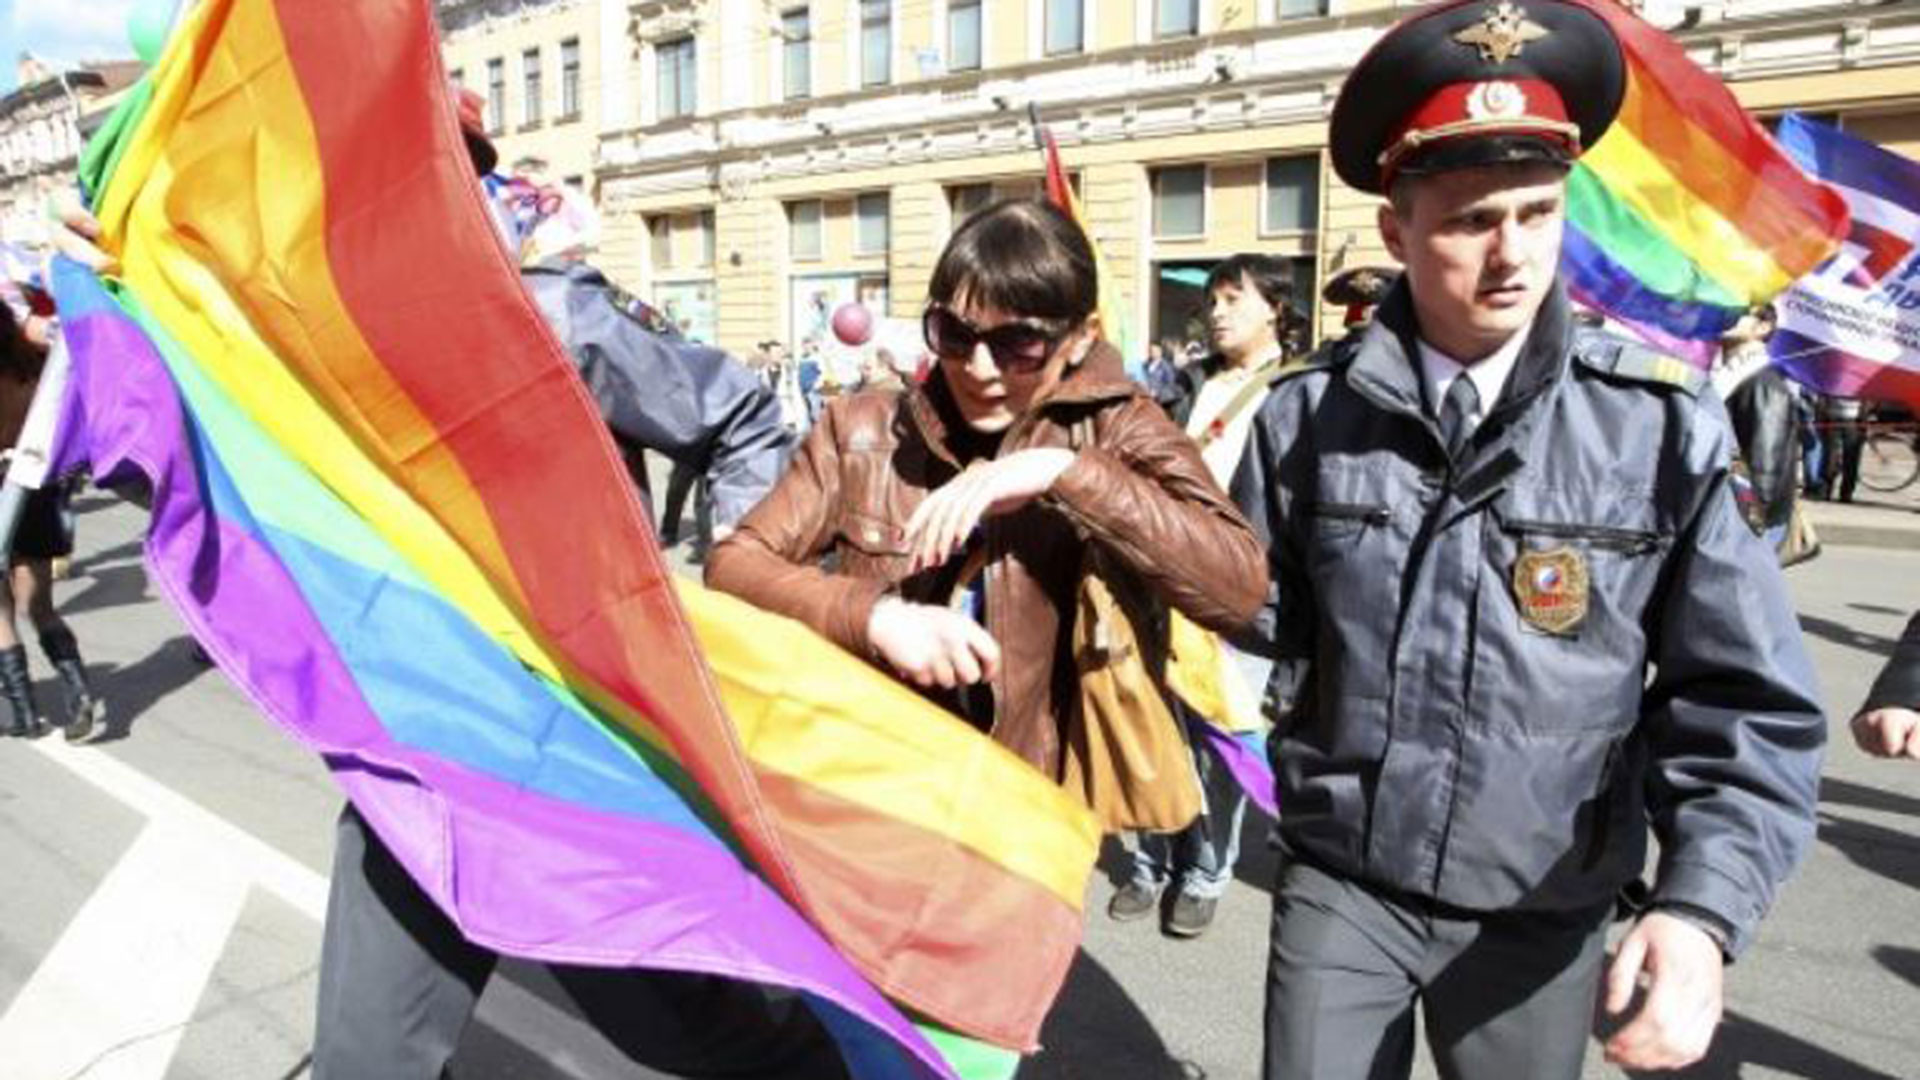 La policía rusa detiene a una activista LGTBI durante una manifestación en Moscú. Putin se quejó de que promovieran "docenas de géneros" y aprobó una ley por la que no se puede mostrar "preferencias sexuales". (AFP)